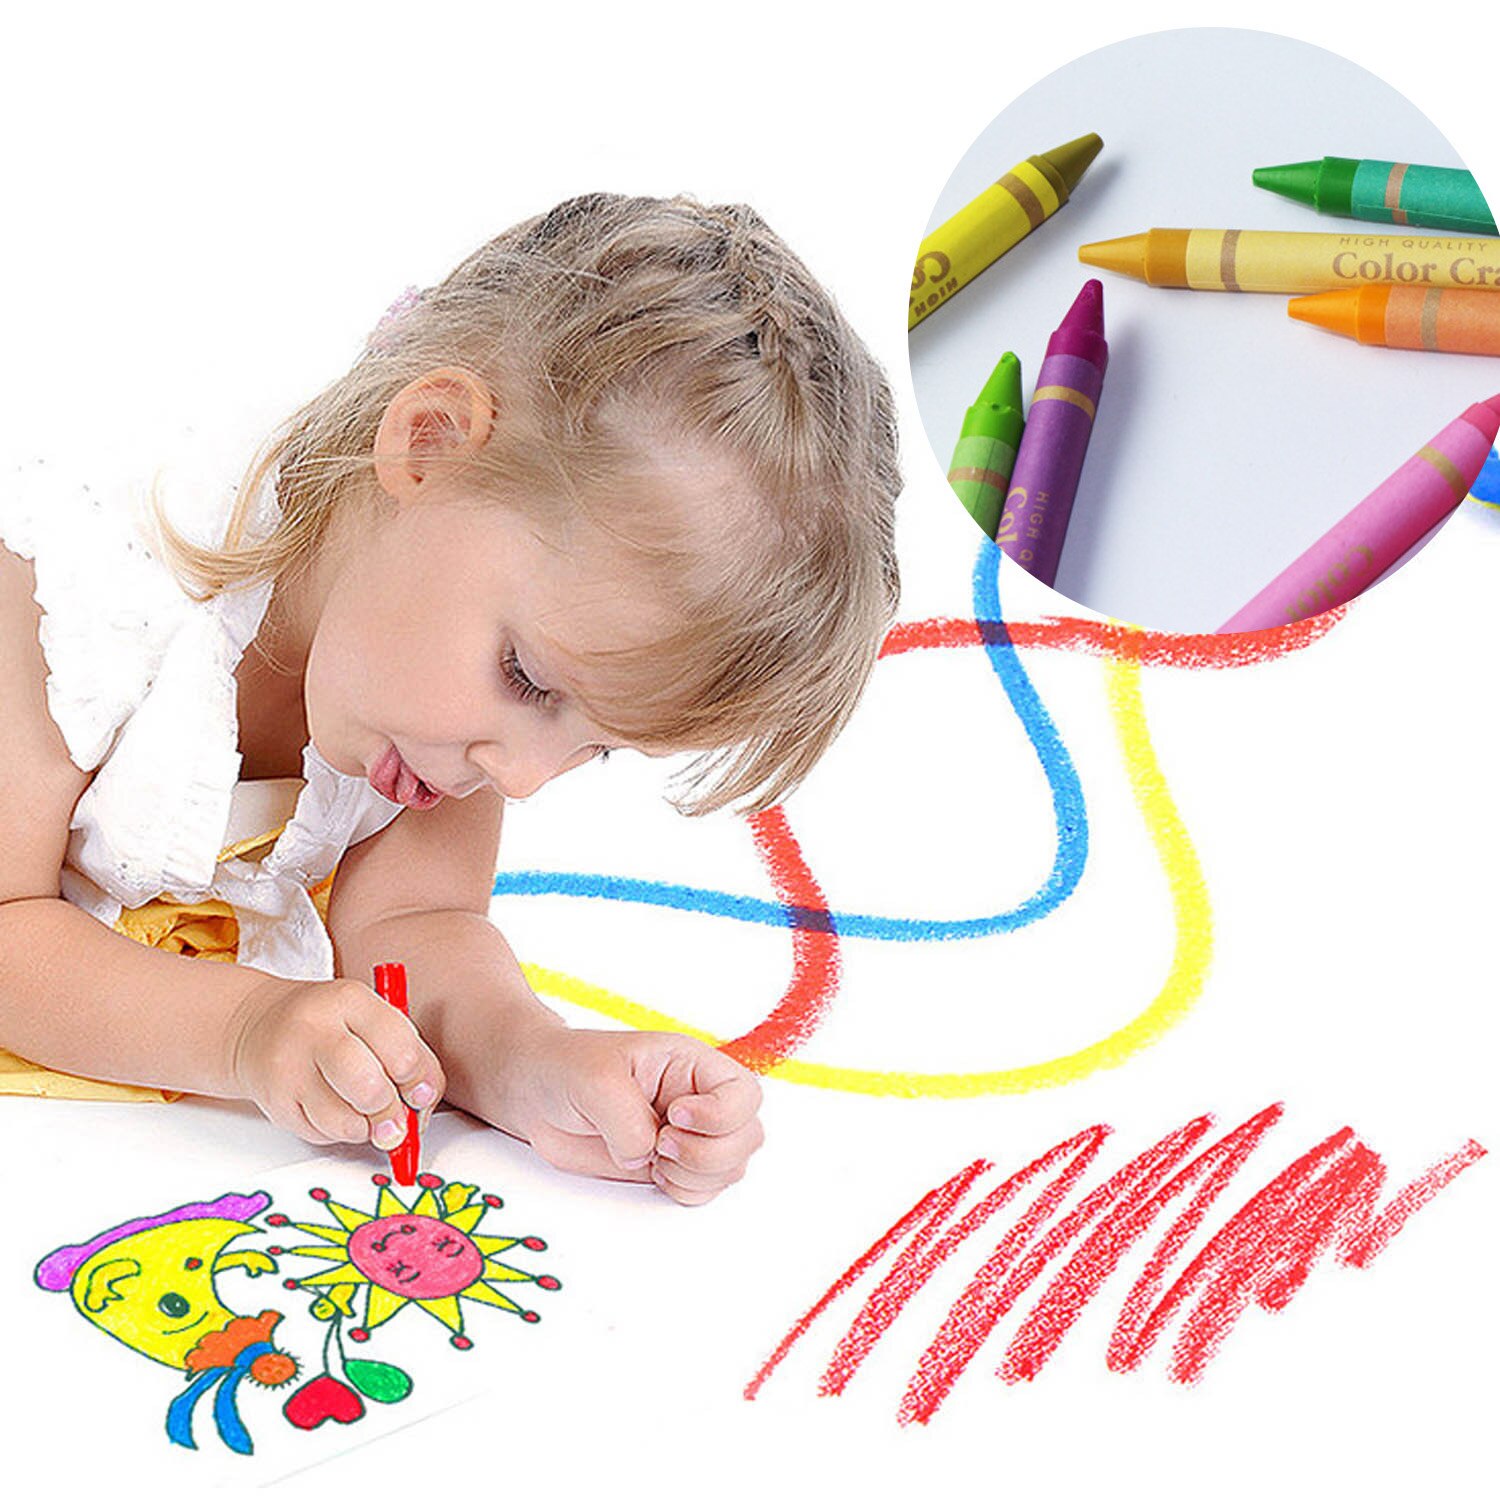 208 stk børn børn maleri tegneværktøj sæt med farvede blyanter tuschblyanter farveblyanter til hjemmeskole børnehaveforsyninger